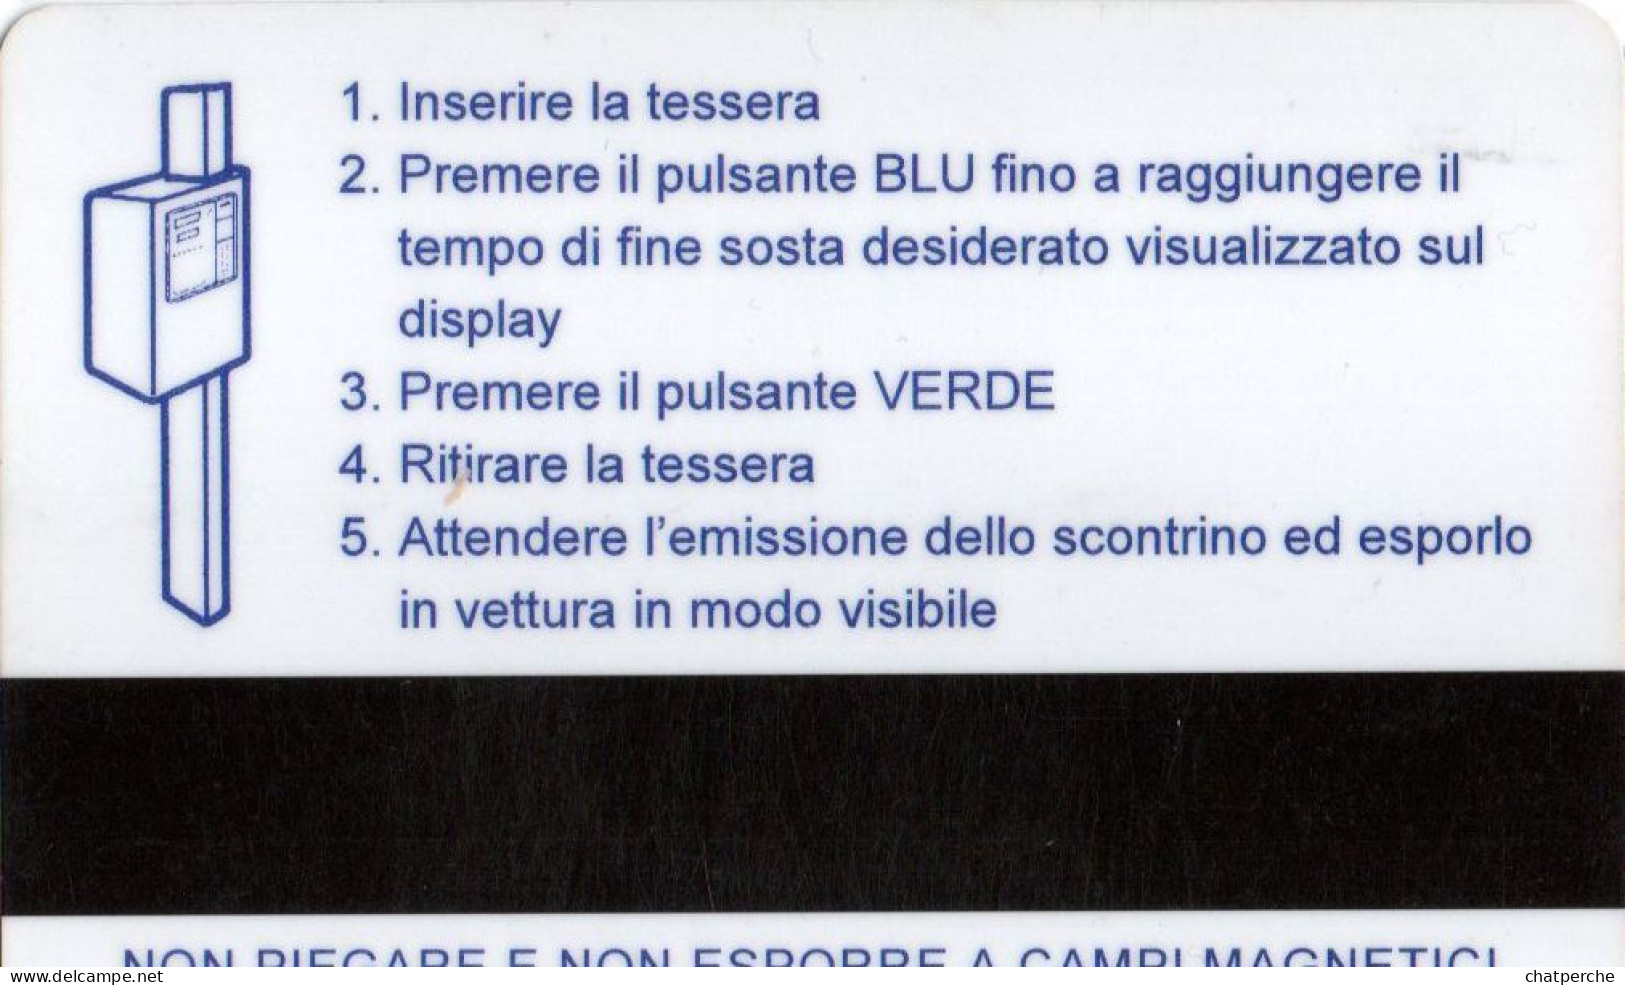 CARTE STATIONNEMENT BANDE MAGNETIQUE PARKING LINE PARK CARD...  ITALIE - Sonstige & Ohne Zuordnung